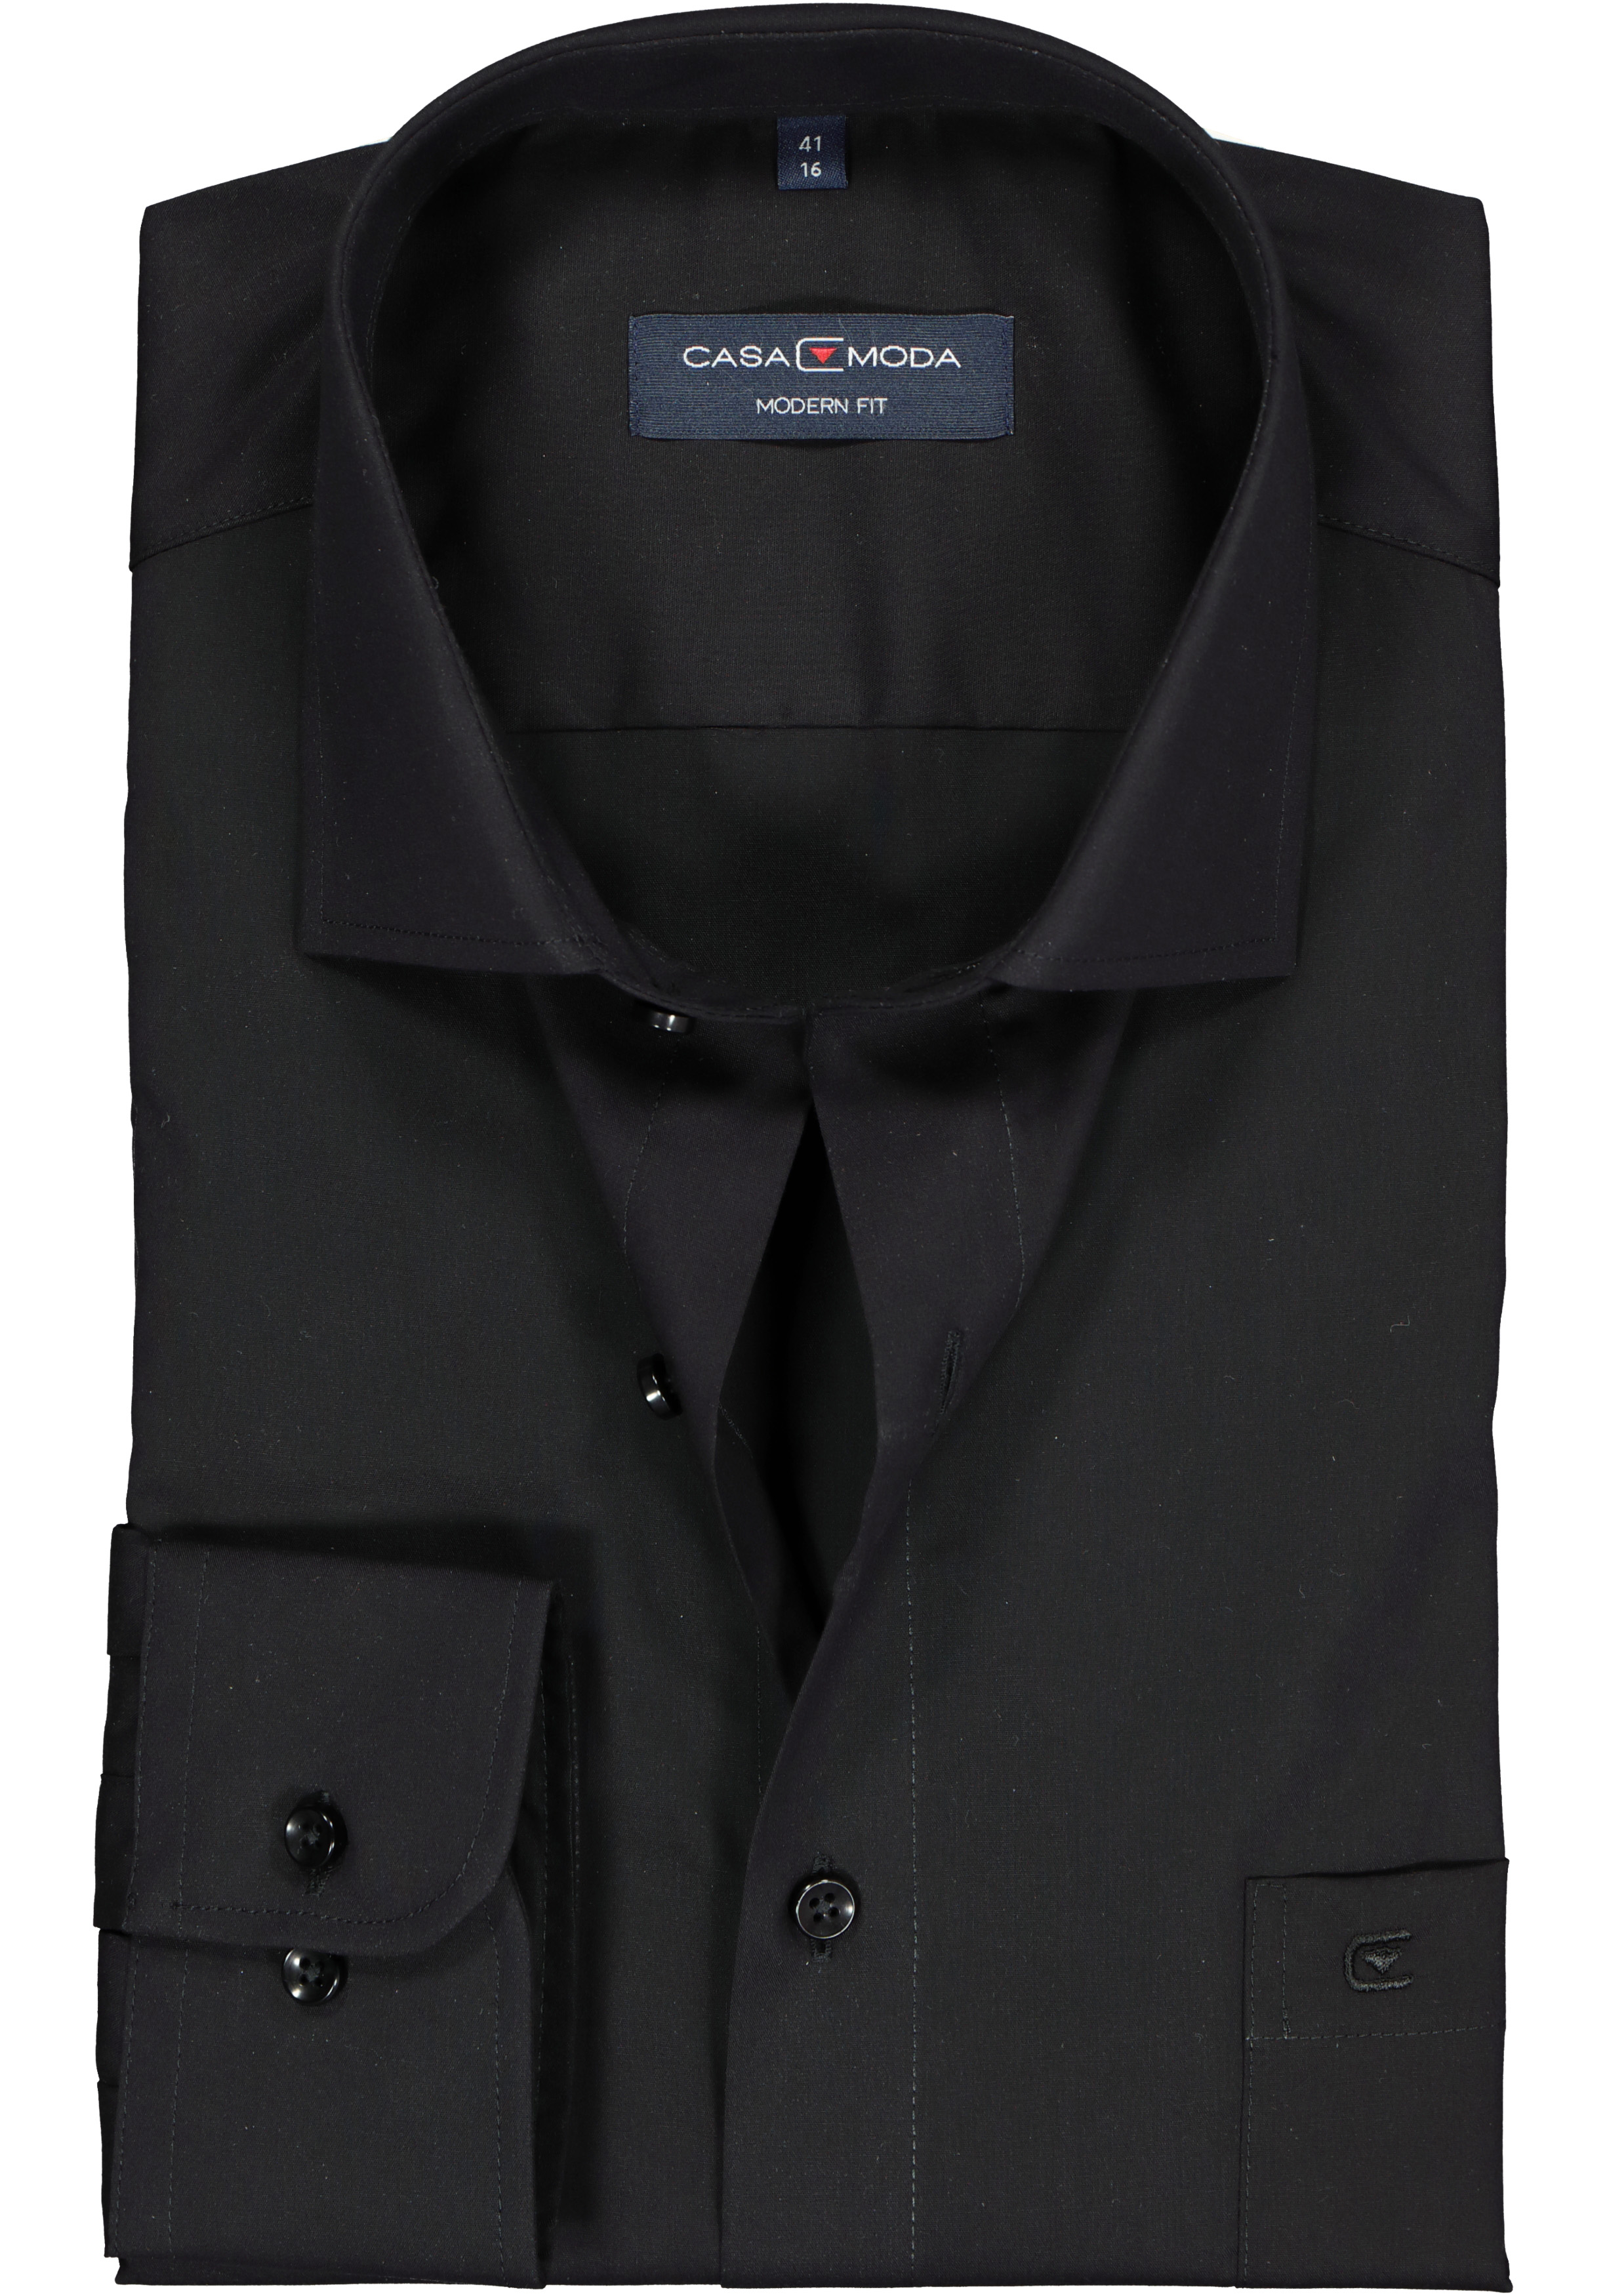 CASA MODA modern fit overhemd, mouwlengte 7, zwart 